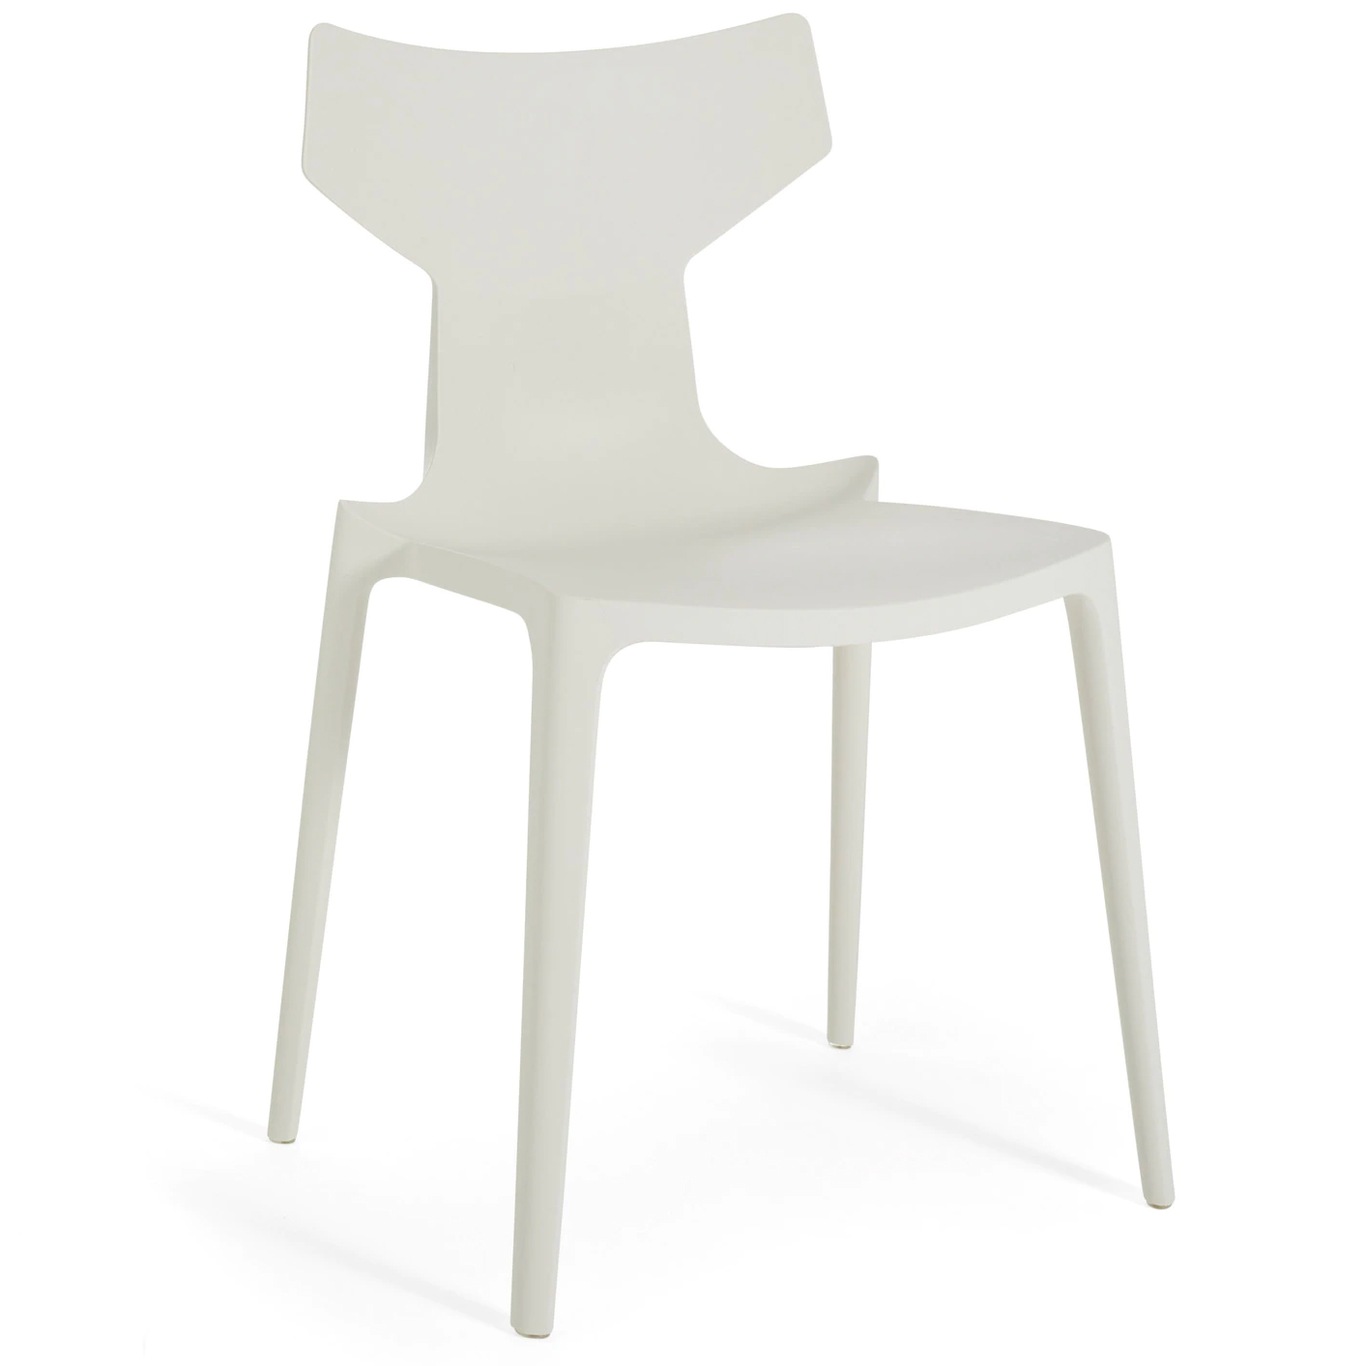 Re-Chair Stuhl, Weiß